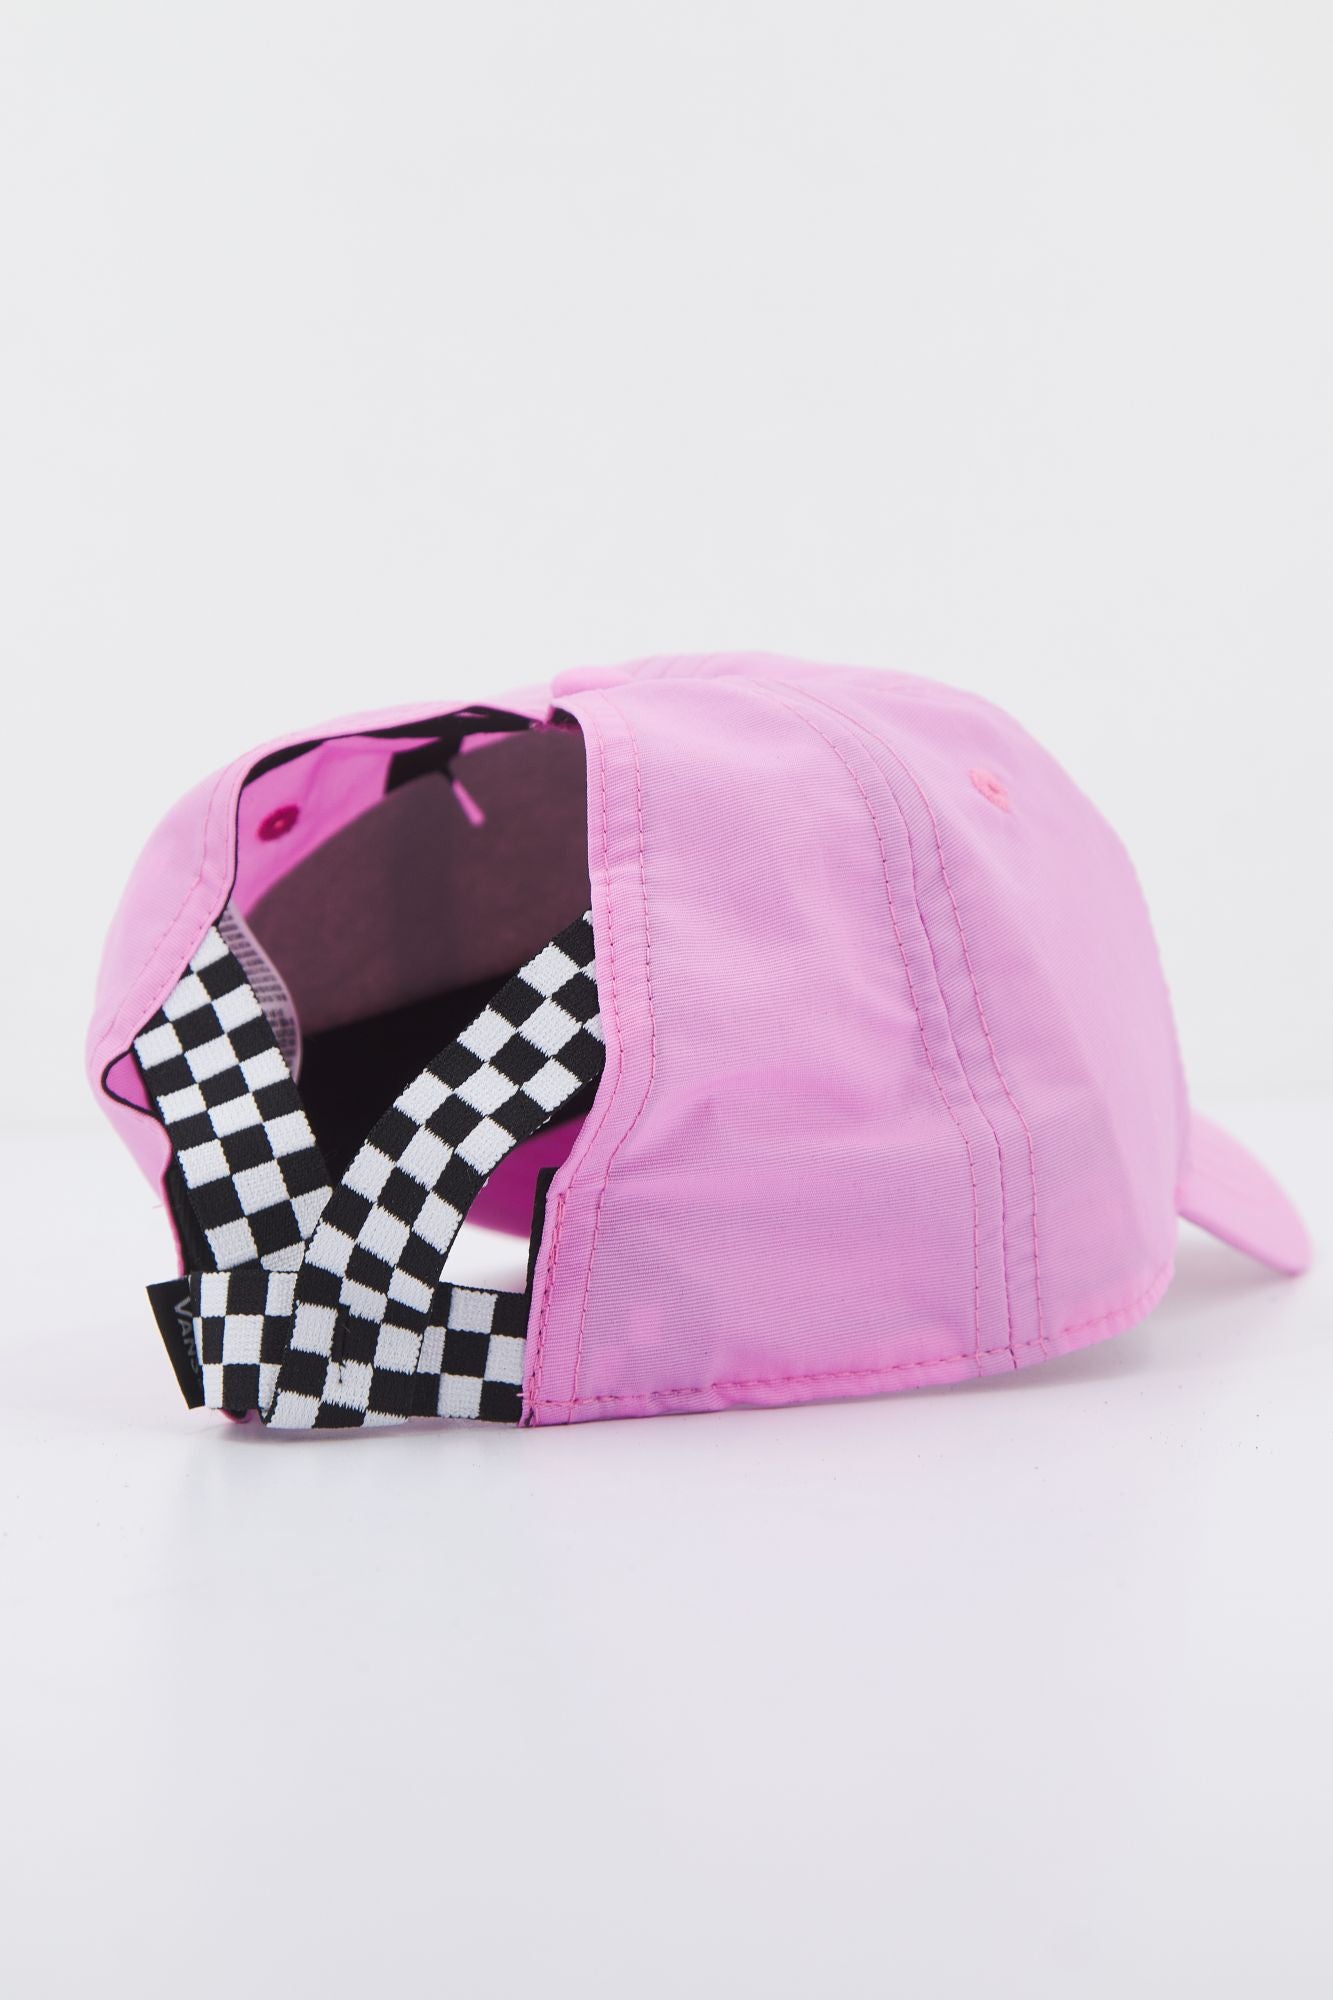 VANS HIGH BACK CAP en color ROSA (4)